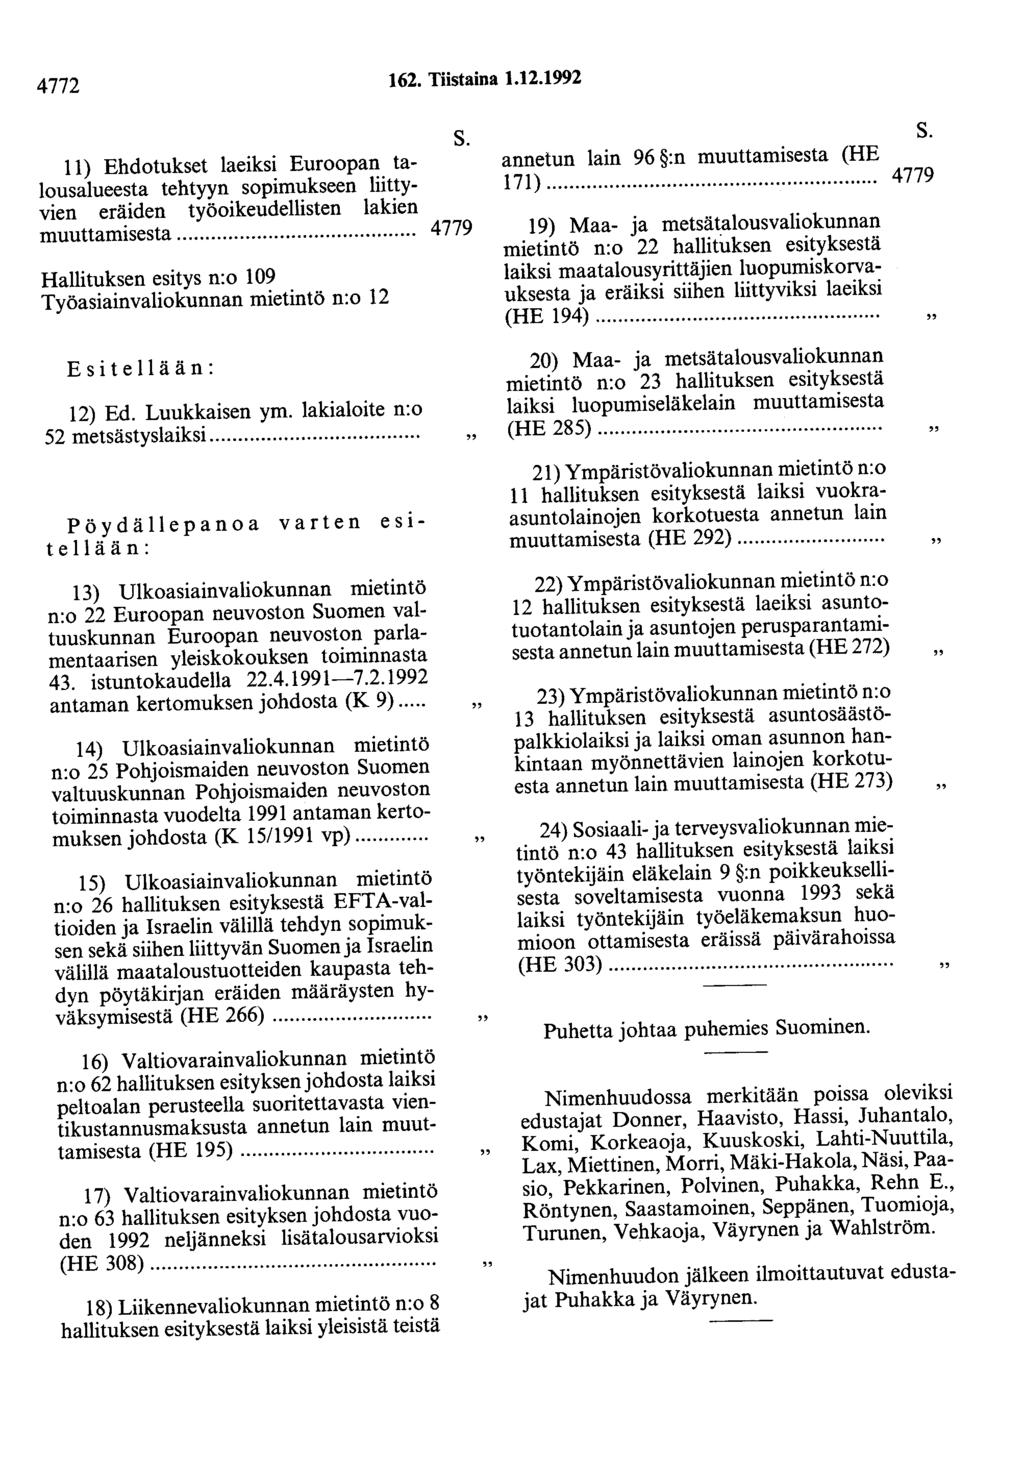 4772 162. Tiistaina 1.12.1992 11) Ehdotukset laeiksi Euroopan talousalueesta tehtyyn sopimukseen liittyvien eräiden työoikeudellisten lakien muuttamisesta.